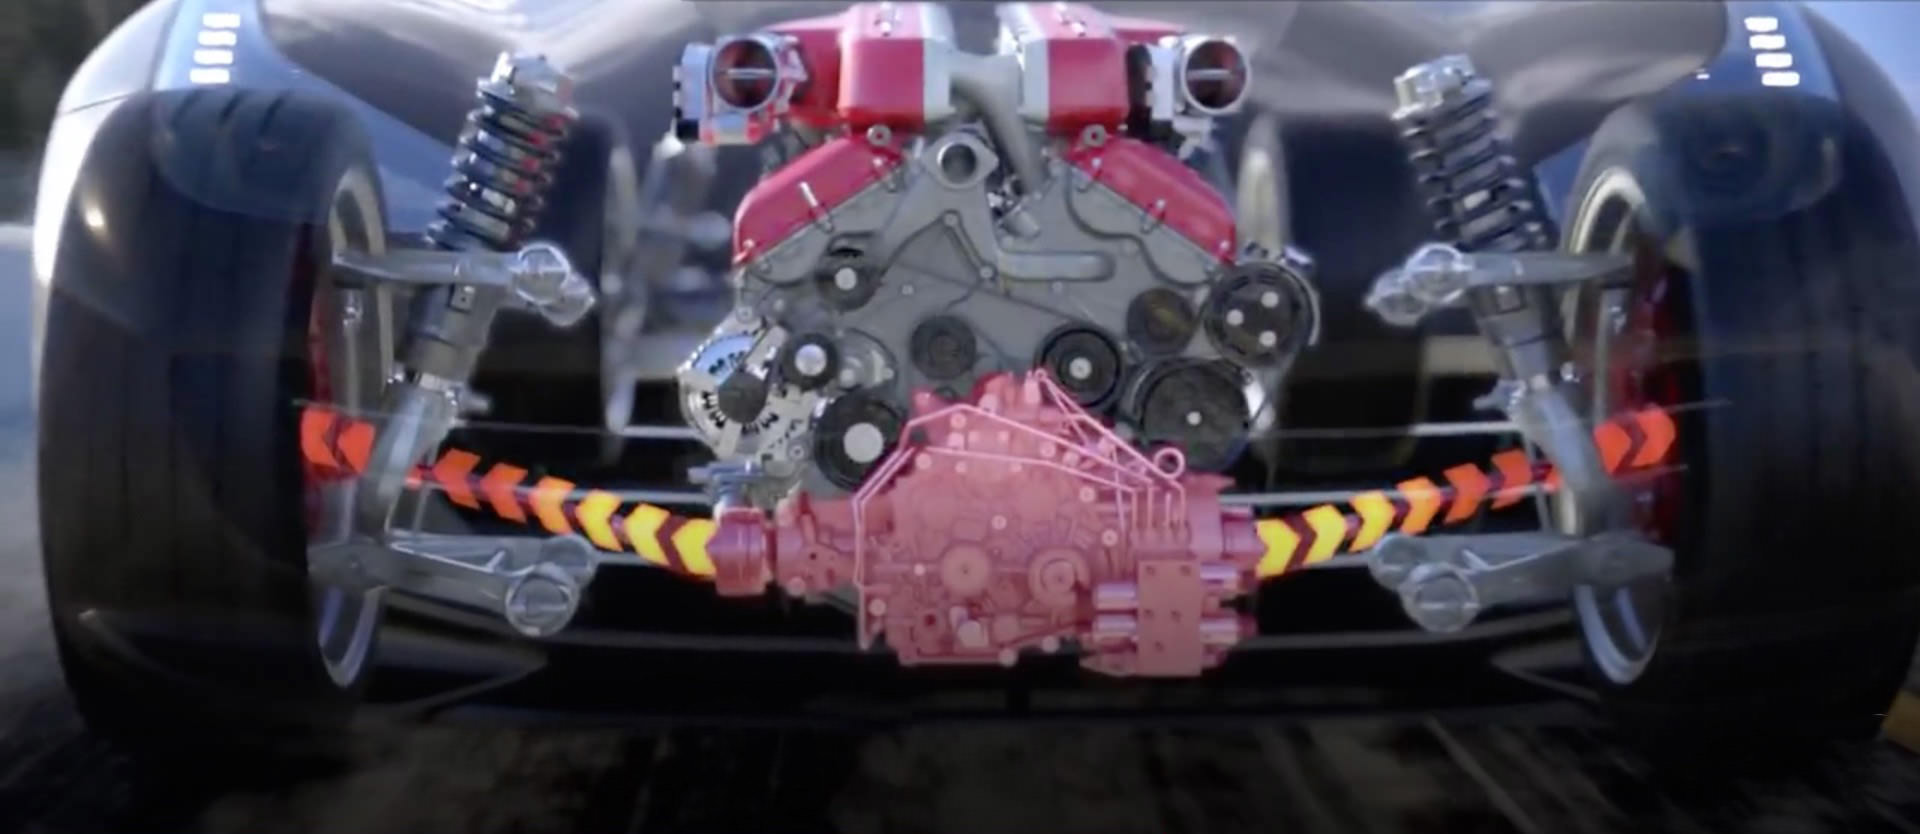 سیستم انتقال قدرت فراری جی تی سی / Ferrari GTC Transmission